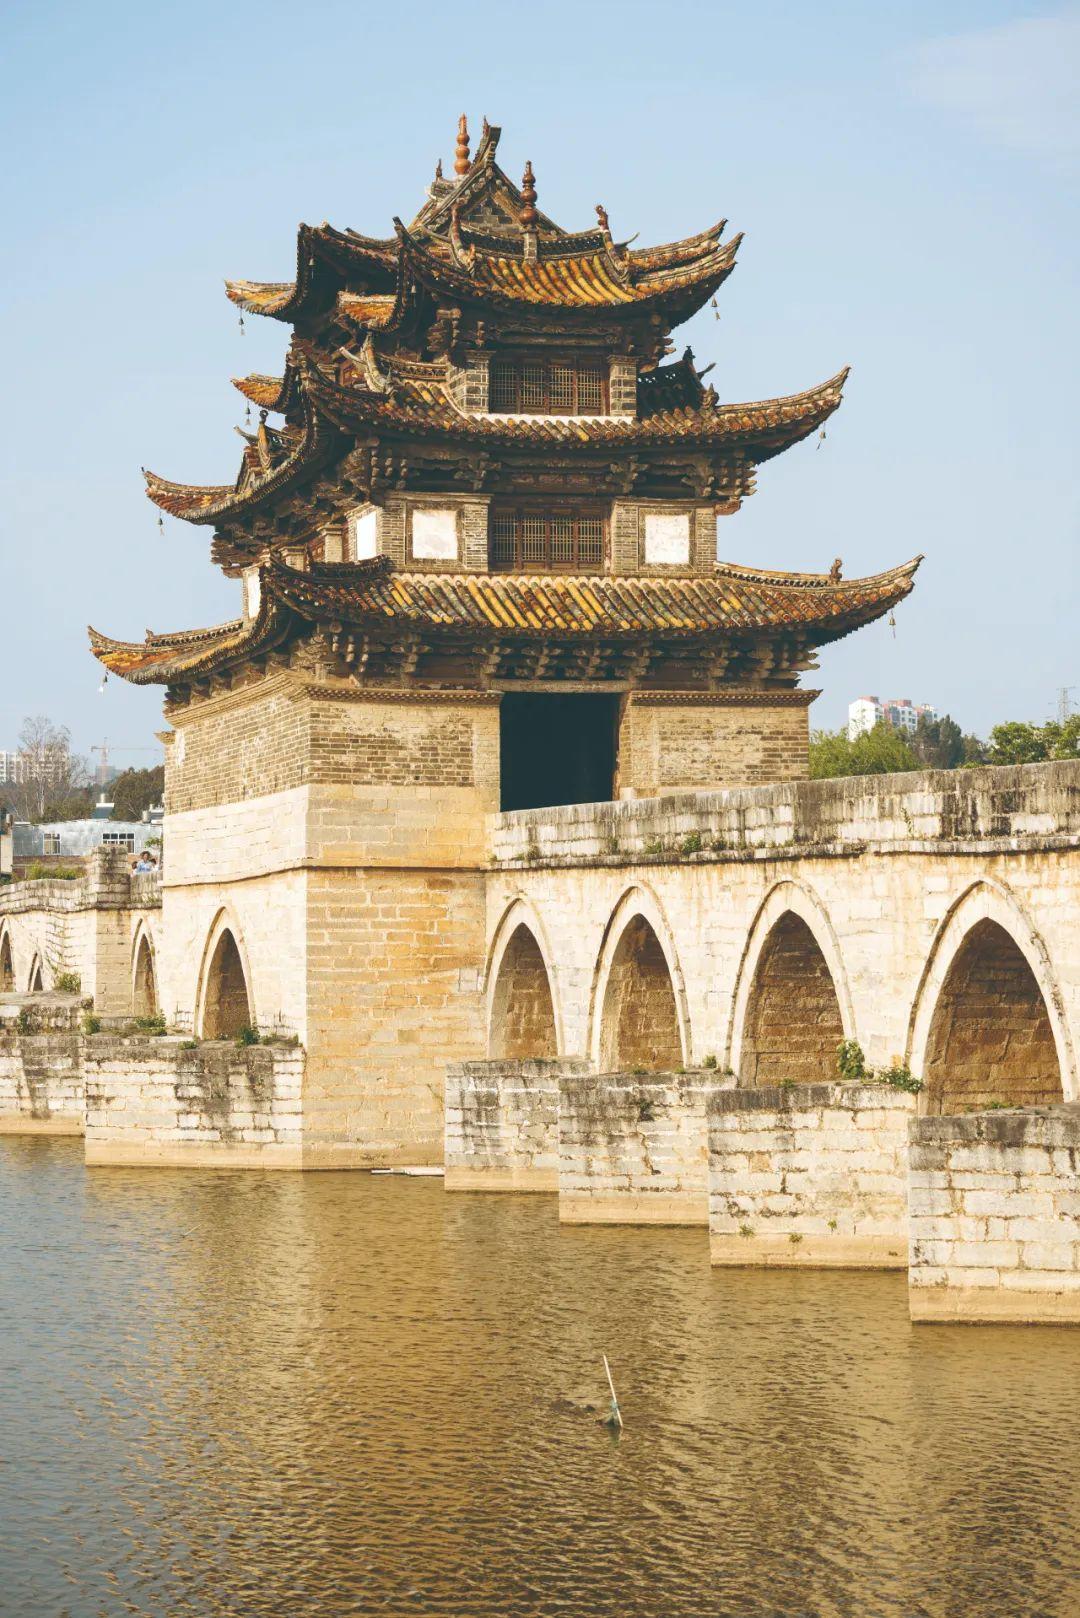 赏析丨30座中国古桥,看小桥流水的浪漫